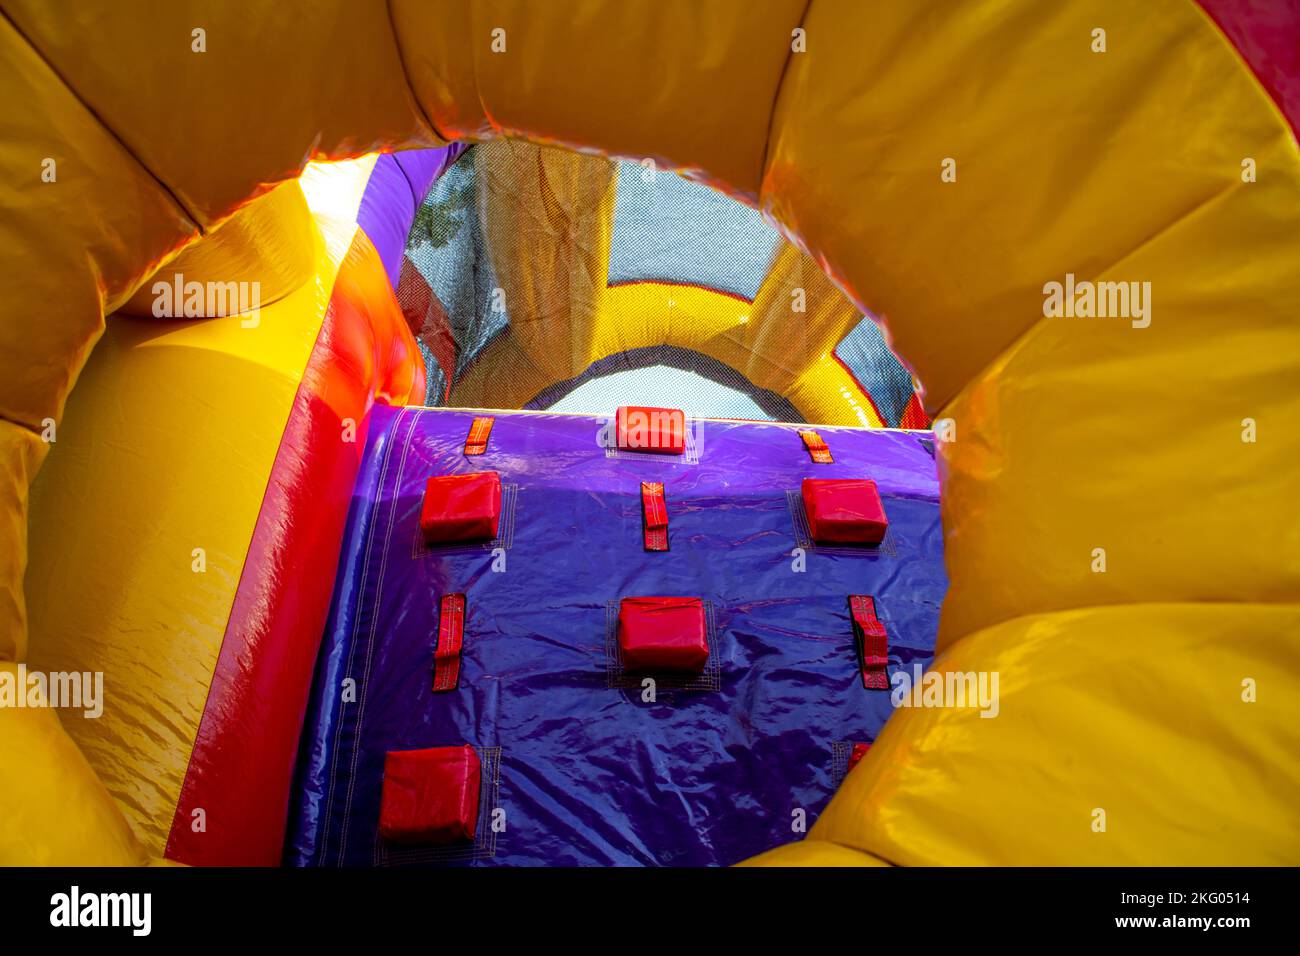 amarillo rojo púrpura diversión casa inflable de la diversión para que los niños jueguen Foto de stock